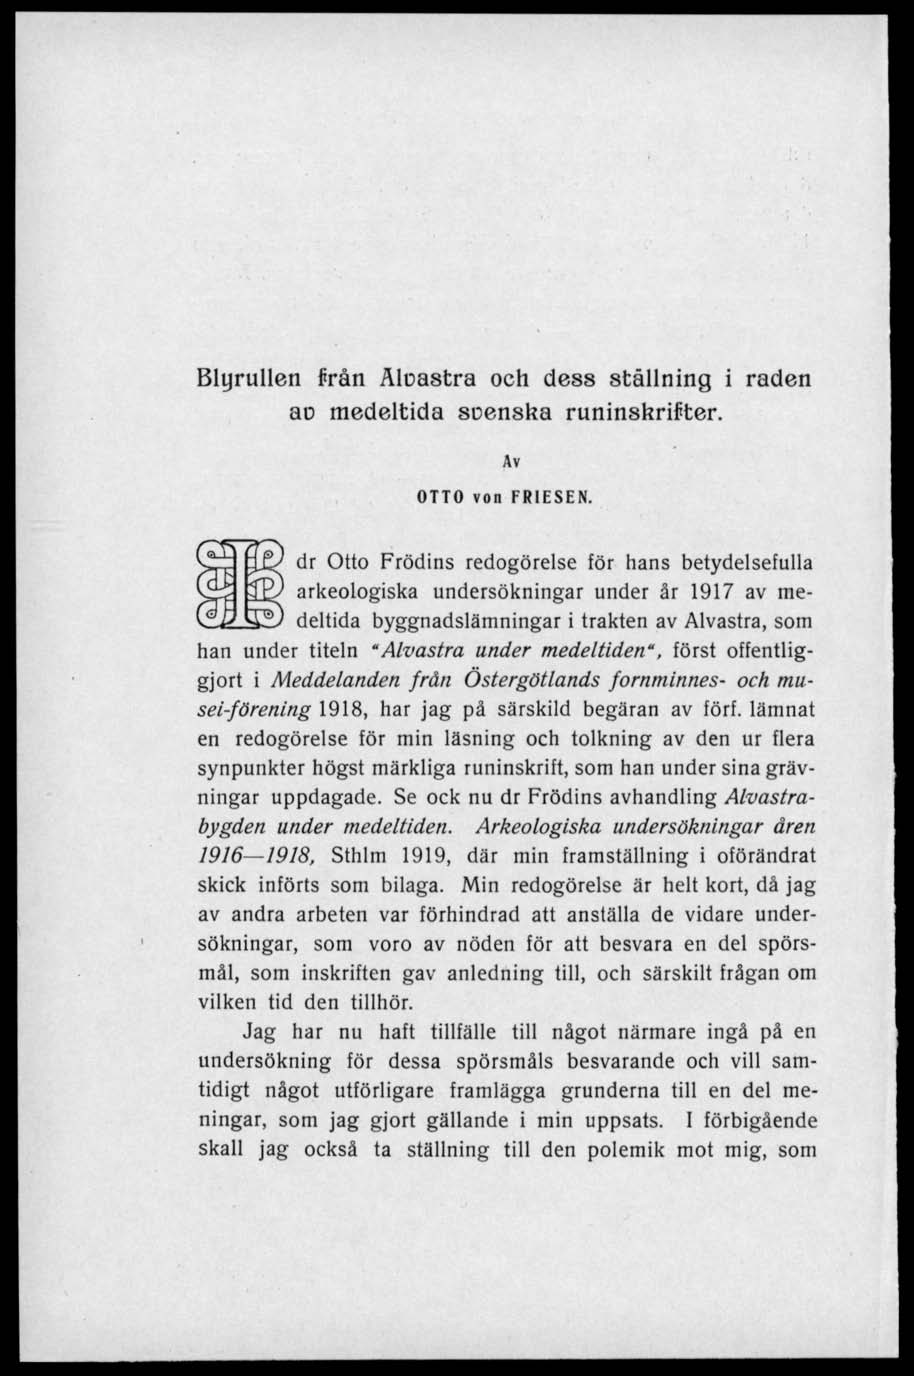 Blyrullen från Aloastra och dess ställning i raden ao medeltida soenska runinskrifter. Av OTTO von FRIESEN.